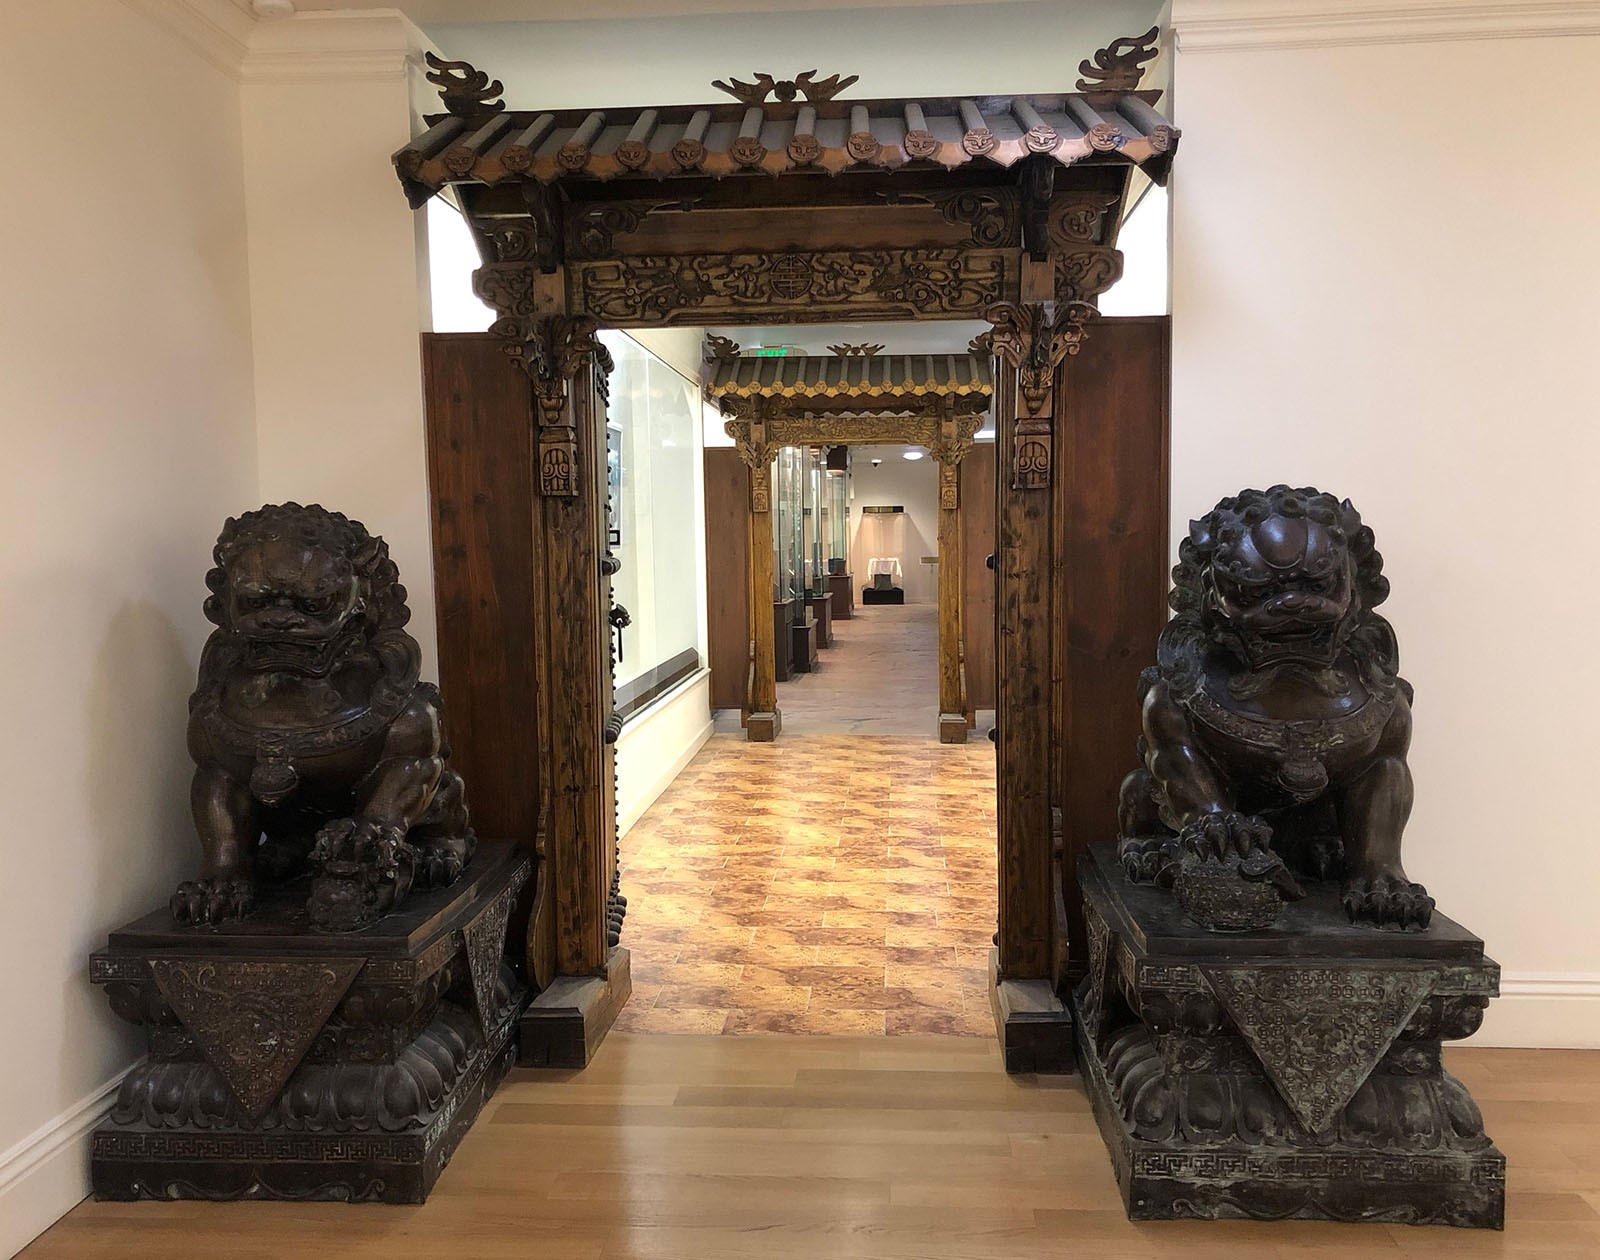 國際藝術館的室內設計有濃厚的東方文化氣息